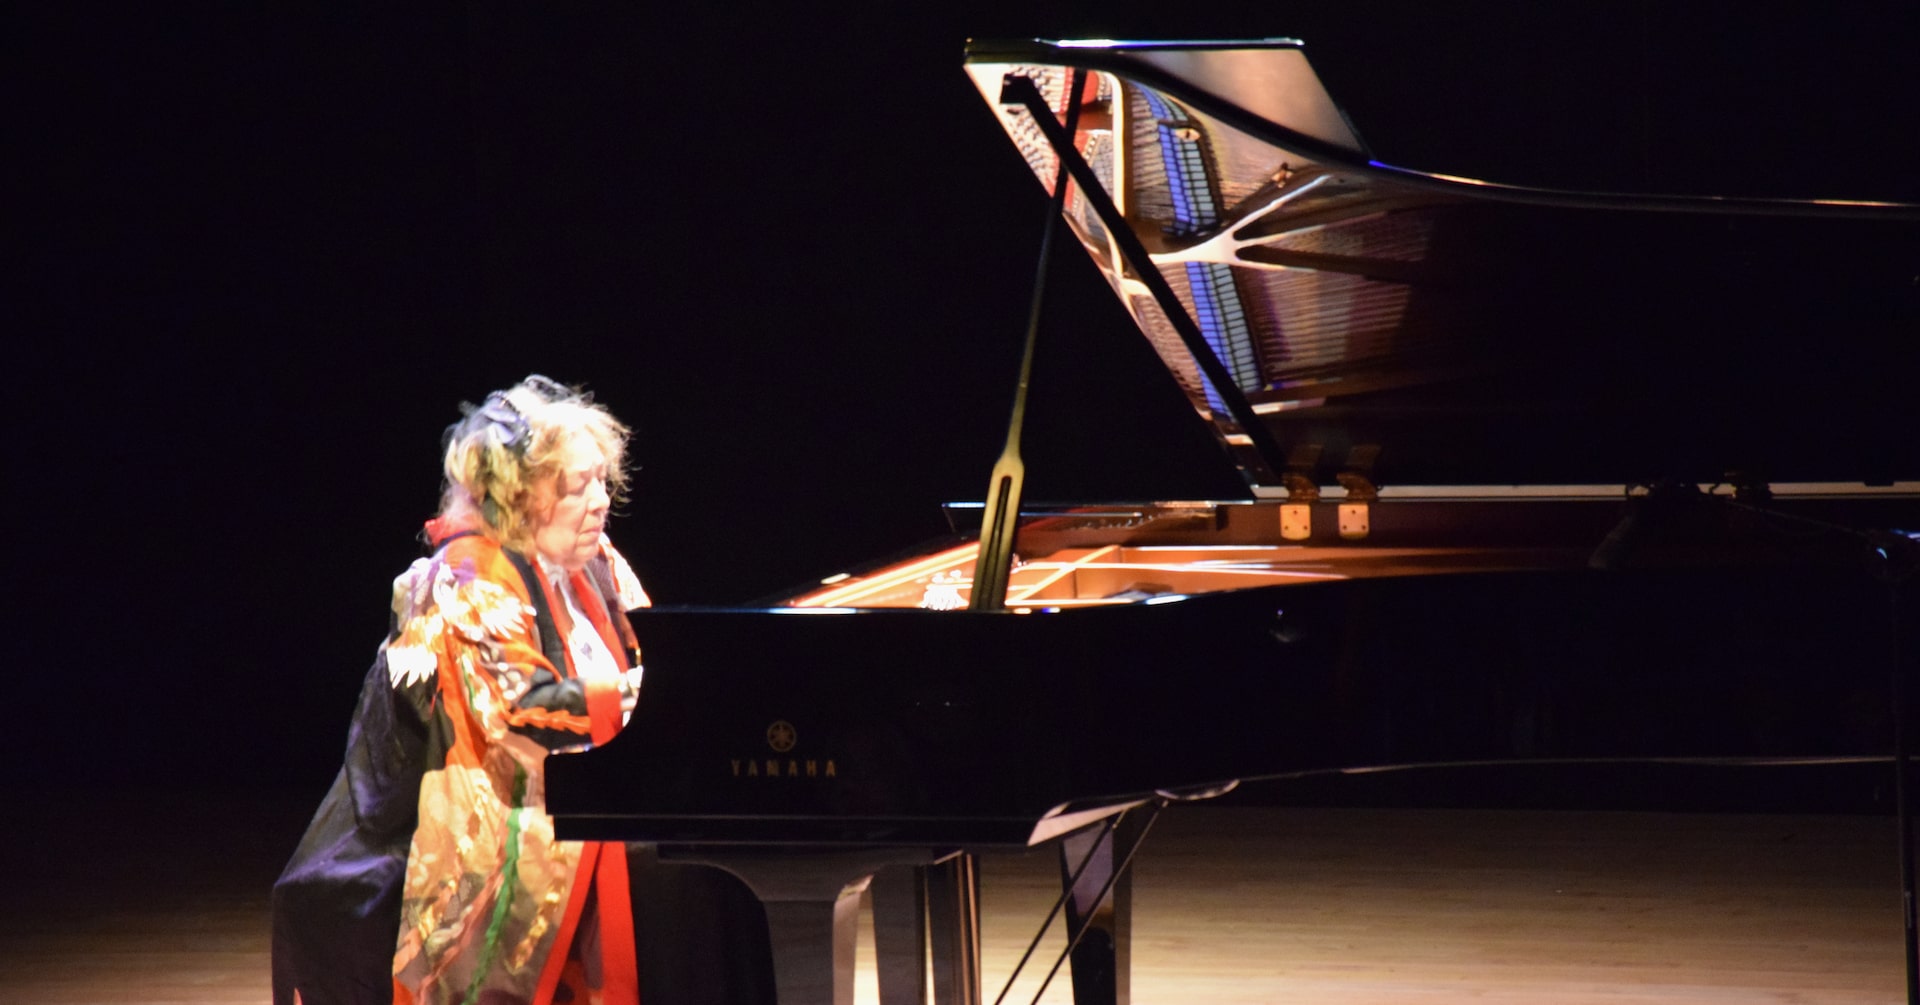 ピアニストのフジコ・ヘミングさん死去、92歳 「奇蹟のカンパネラ」